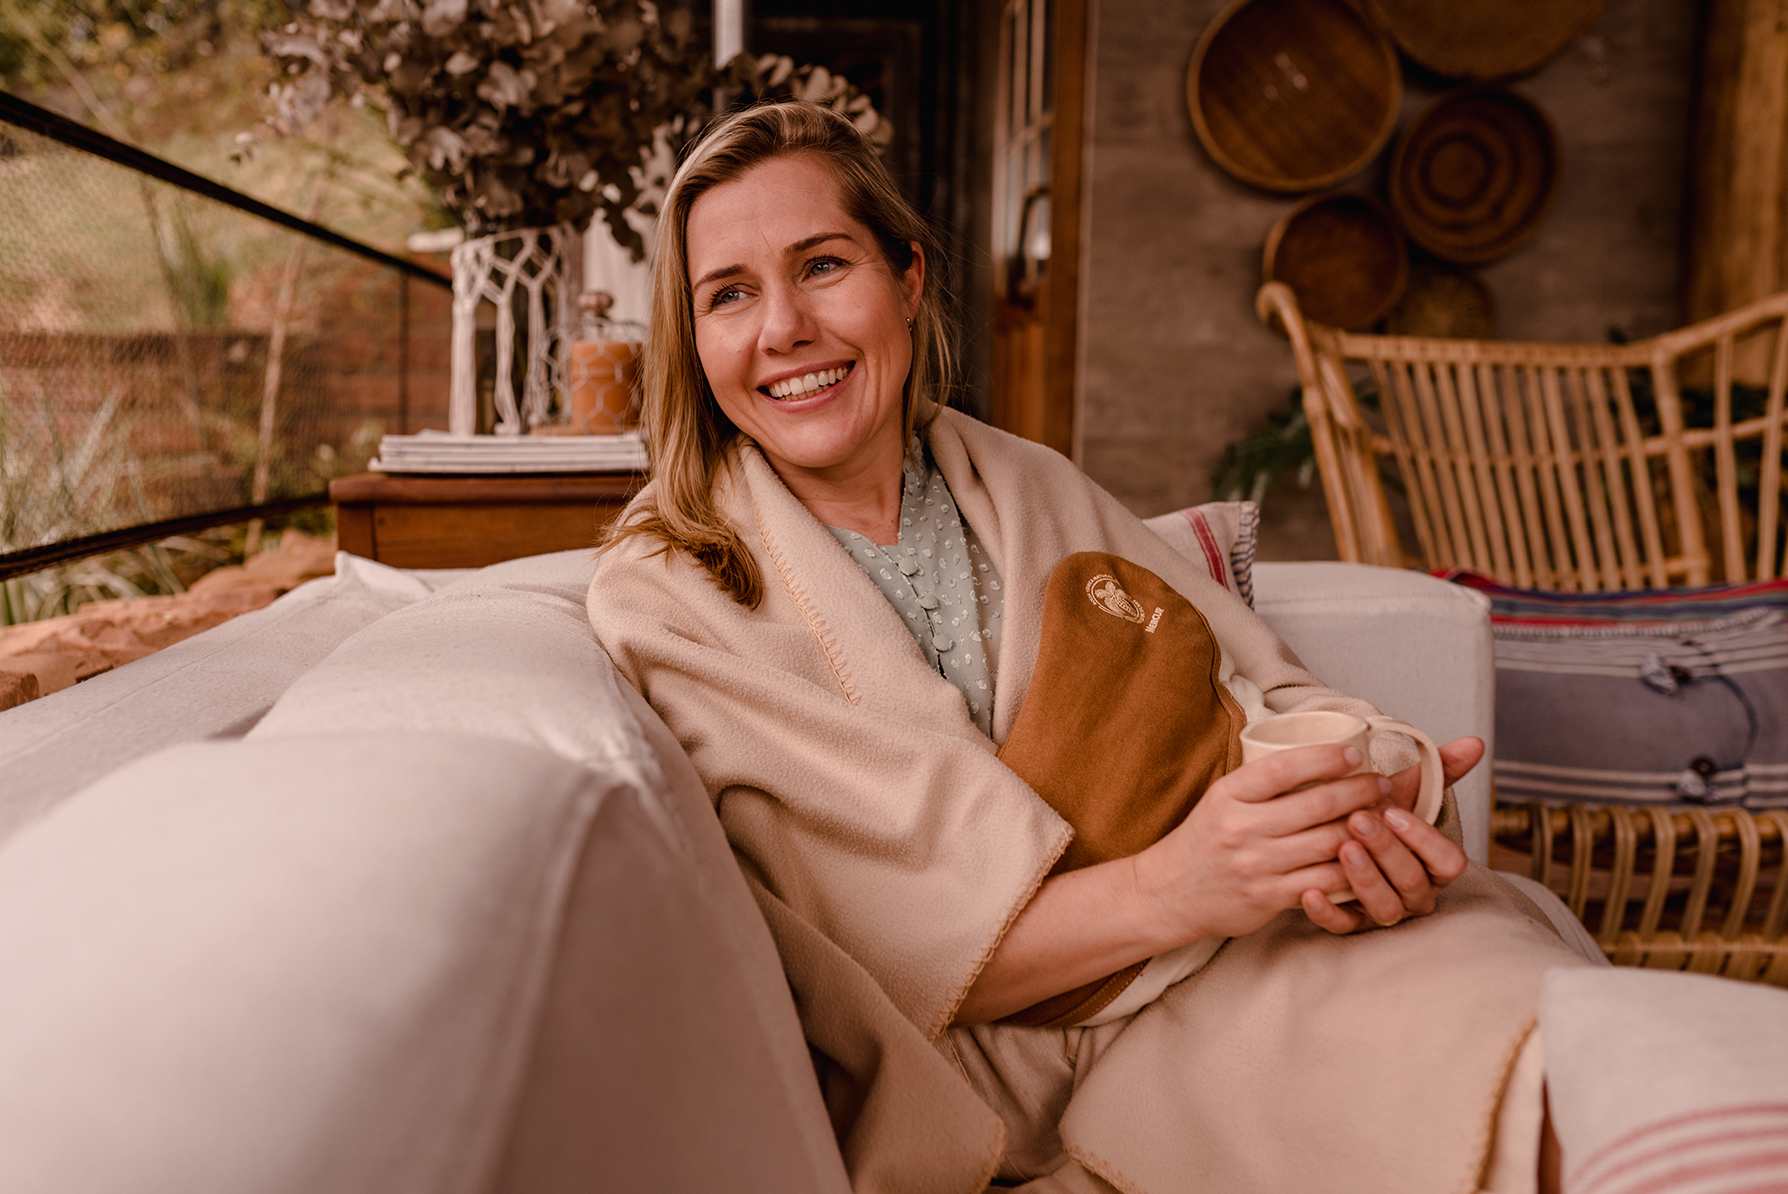 Uma mulher está sentada em um sofá envolta em uma coberta, segurando uma xícara e utilizando uma Bolsa Térmica Natural Grande sobre seu abdômen. Ela sorri, olhando para o lado esquerdo da foto.